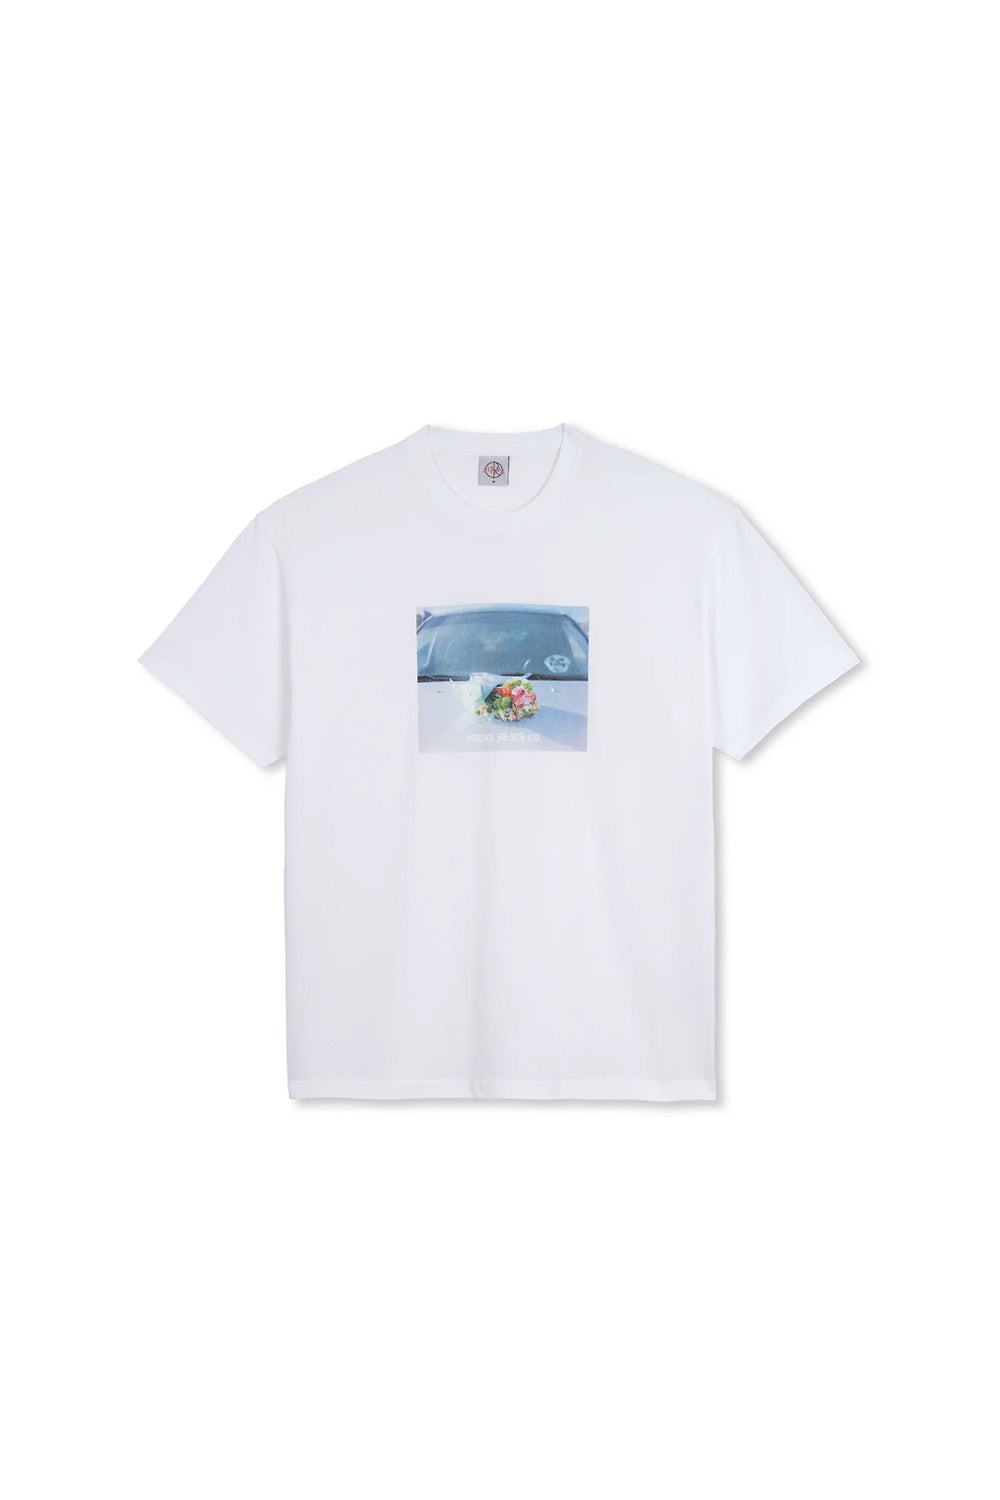 Polar Skate Co Dead Flowers T-Shirt